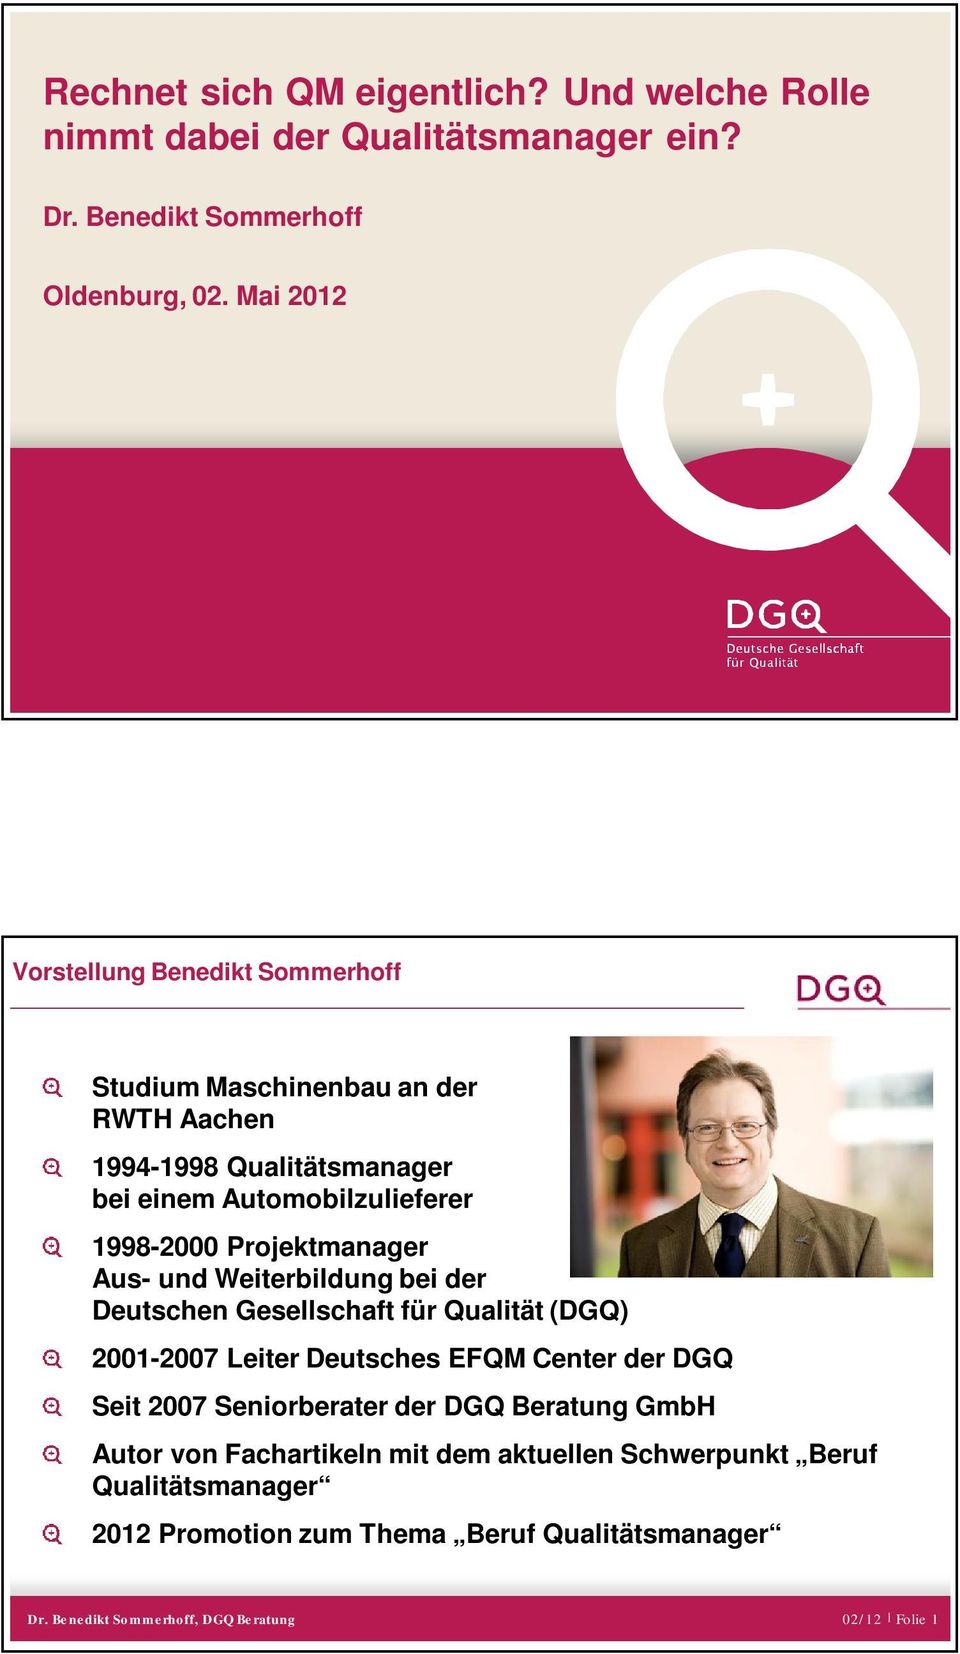 1998-2000 Projektmanager Aus- und Weiterbildung bei der Deutschen Gesellschaft für Qualität (DGQ) 2001-2007 Leiter Deutsches EFQM Center der DGQ